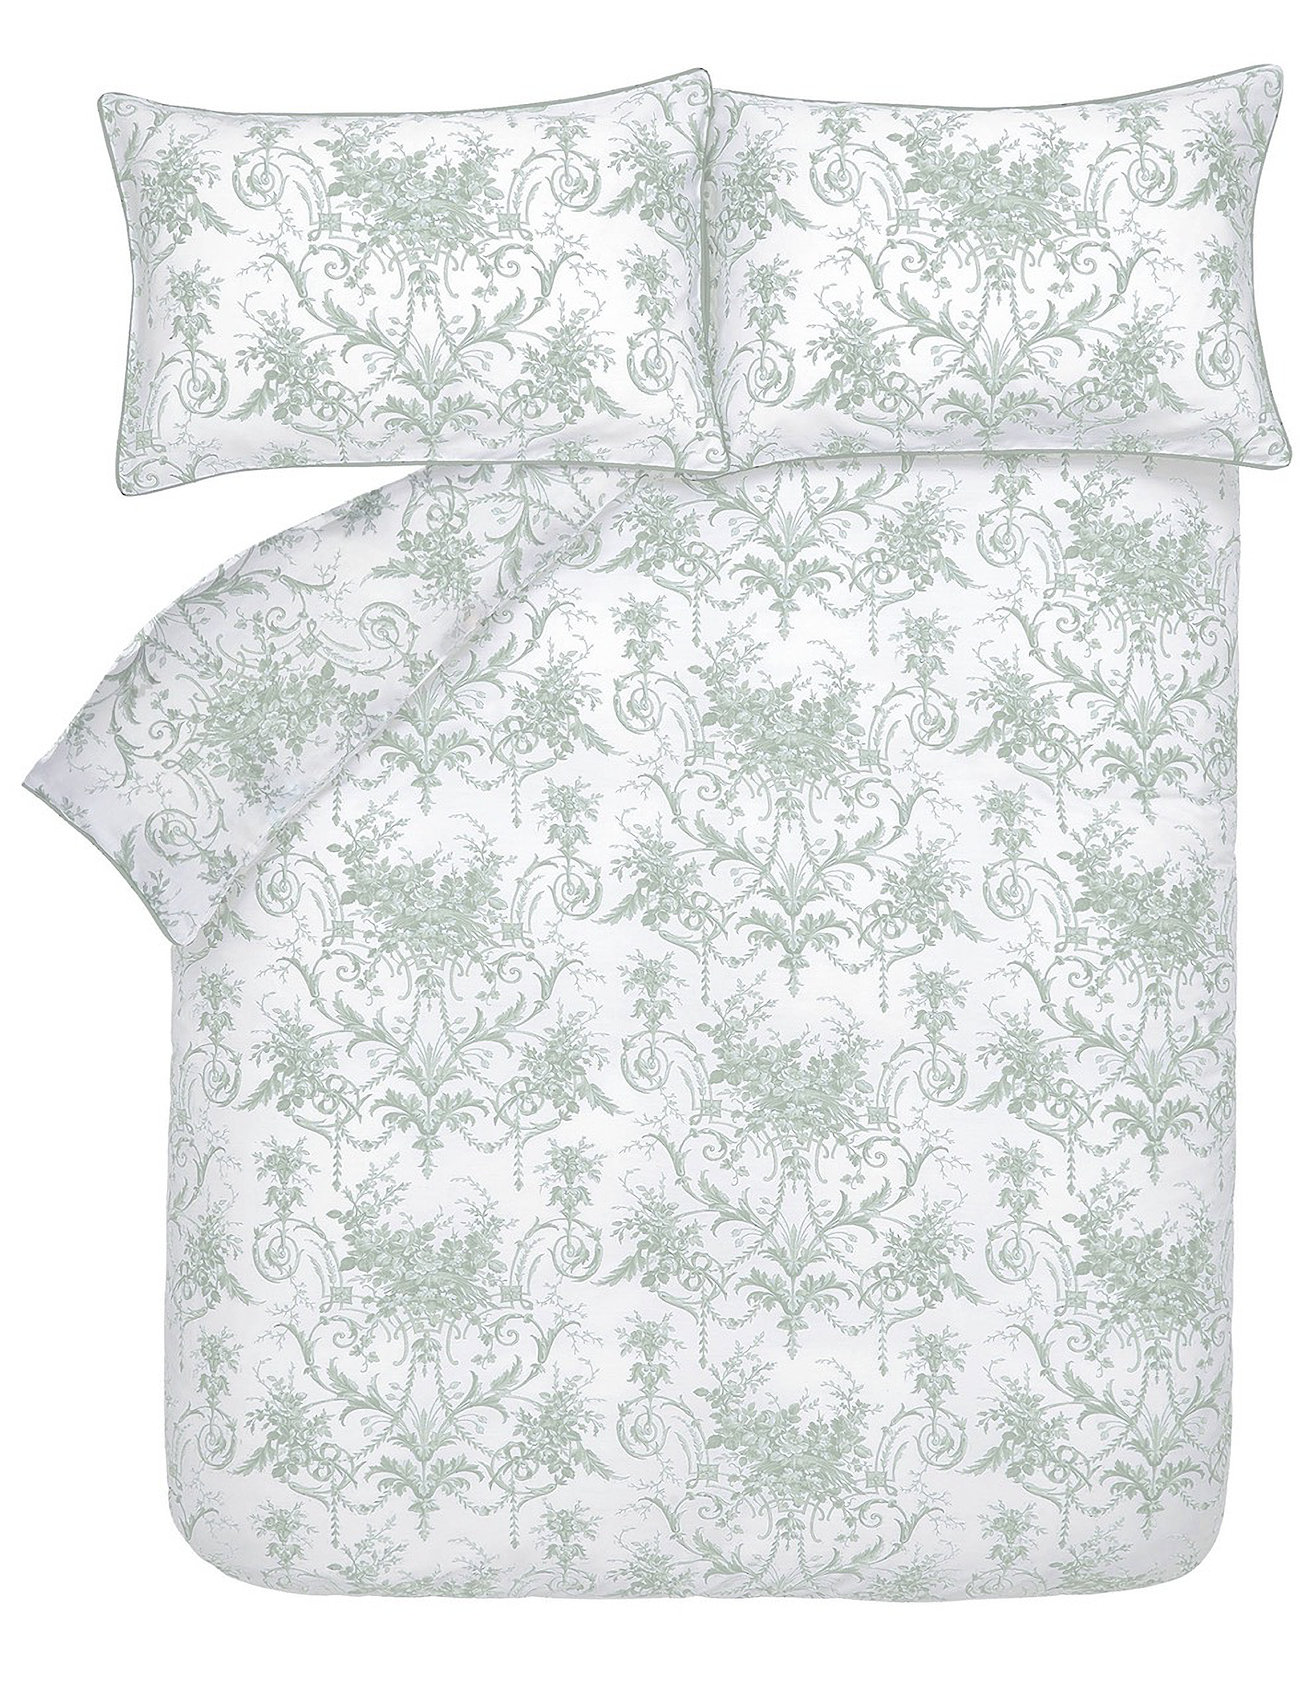 230X220 Cm Double Duvet Cover Tuileries Home Textiles Bedtextiles Duvet Covers Green Laura Ashley